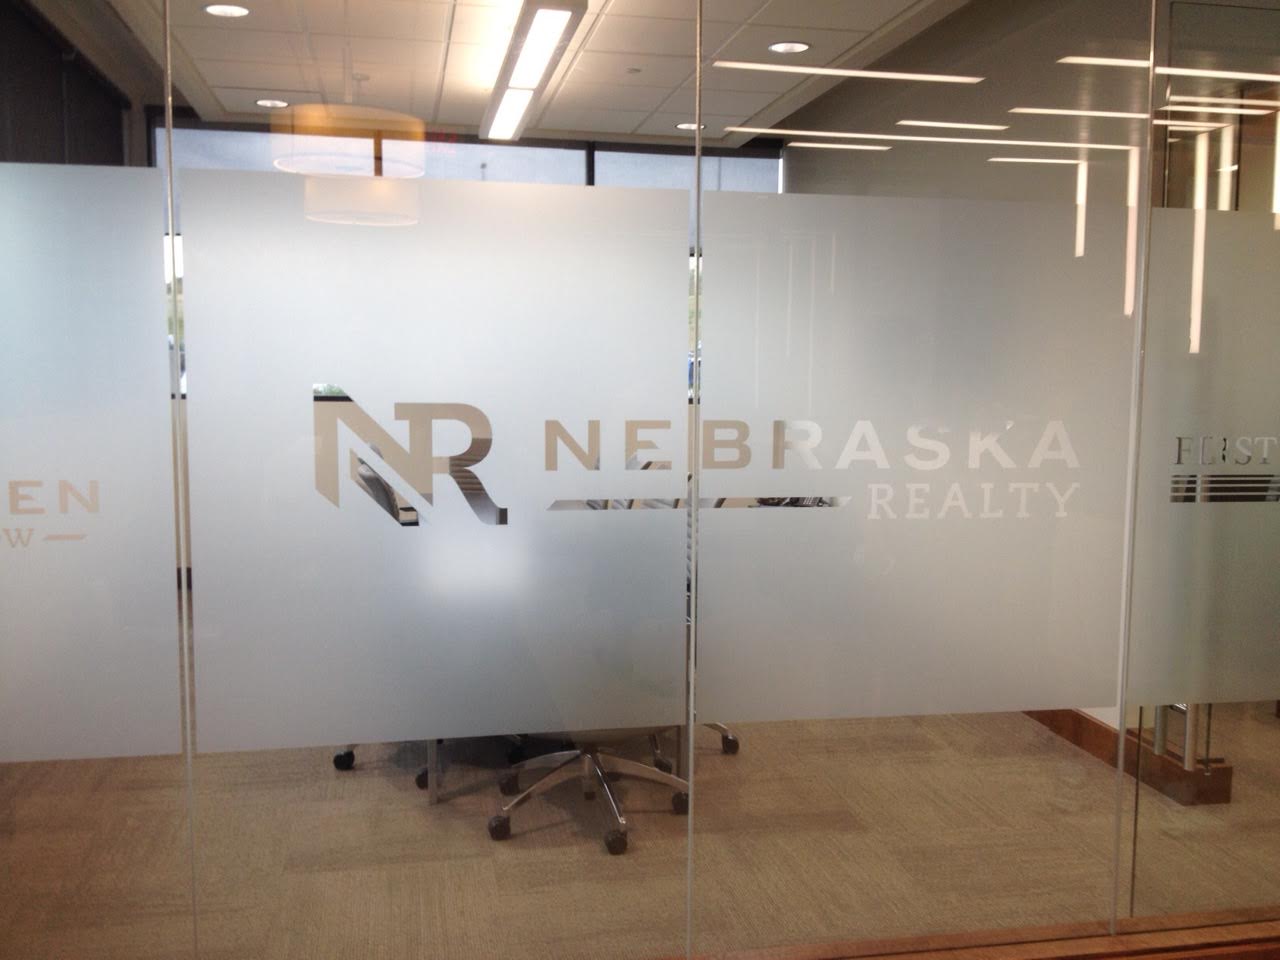 Nebraska Realty's new logo in new corporate office building 